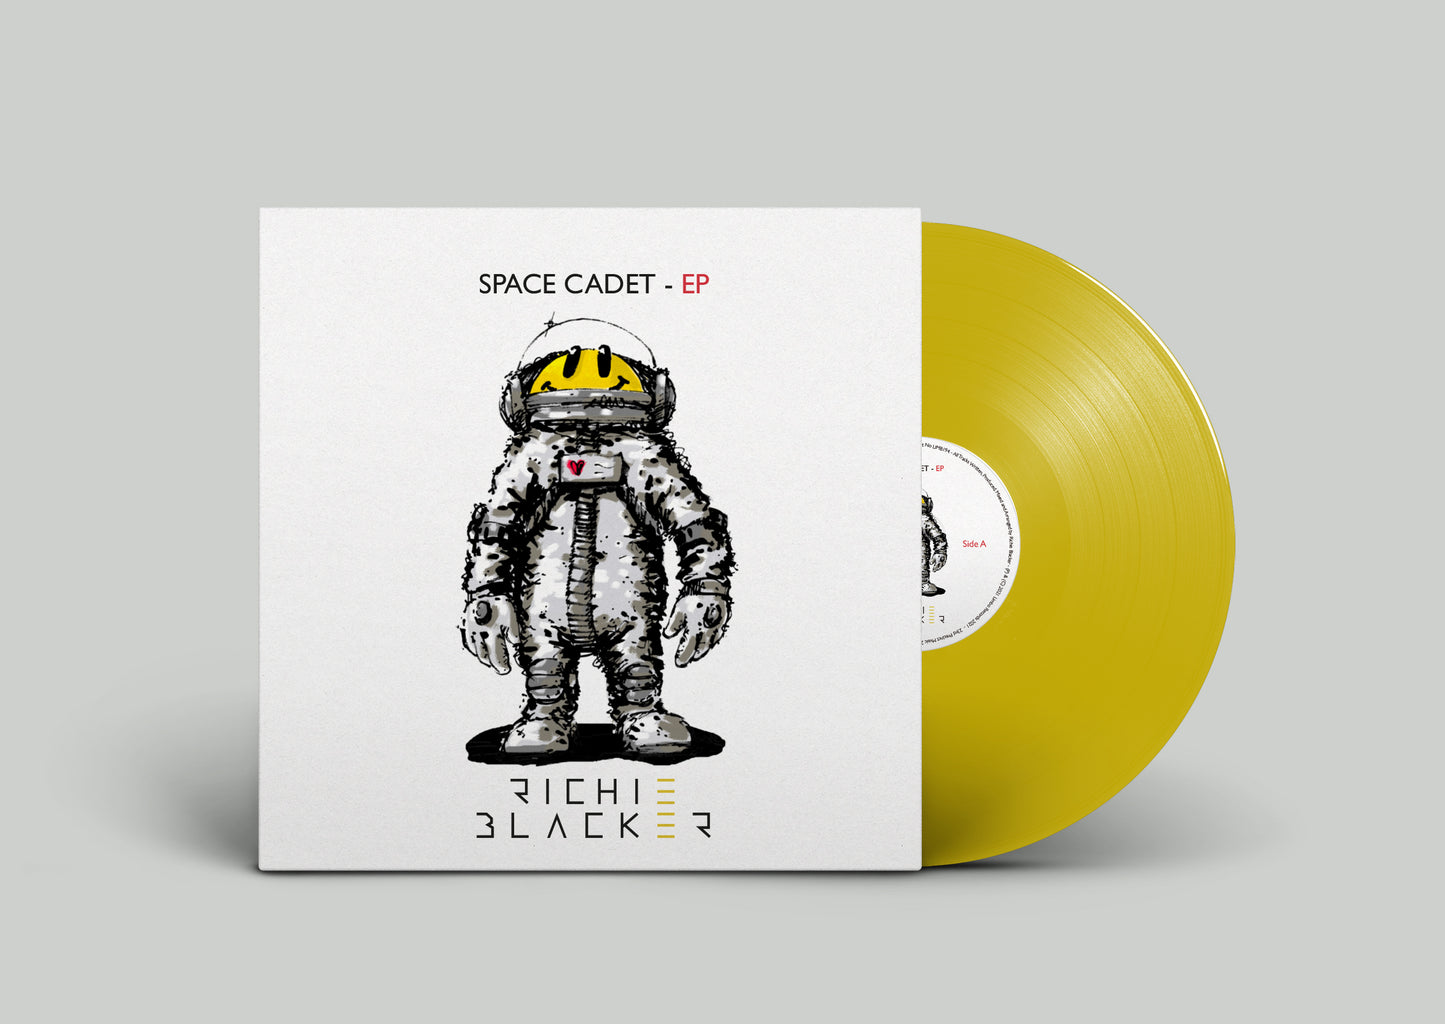 Richie Blacker - Space Cadet [Vinyl]